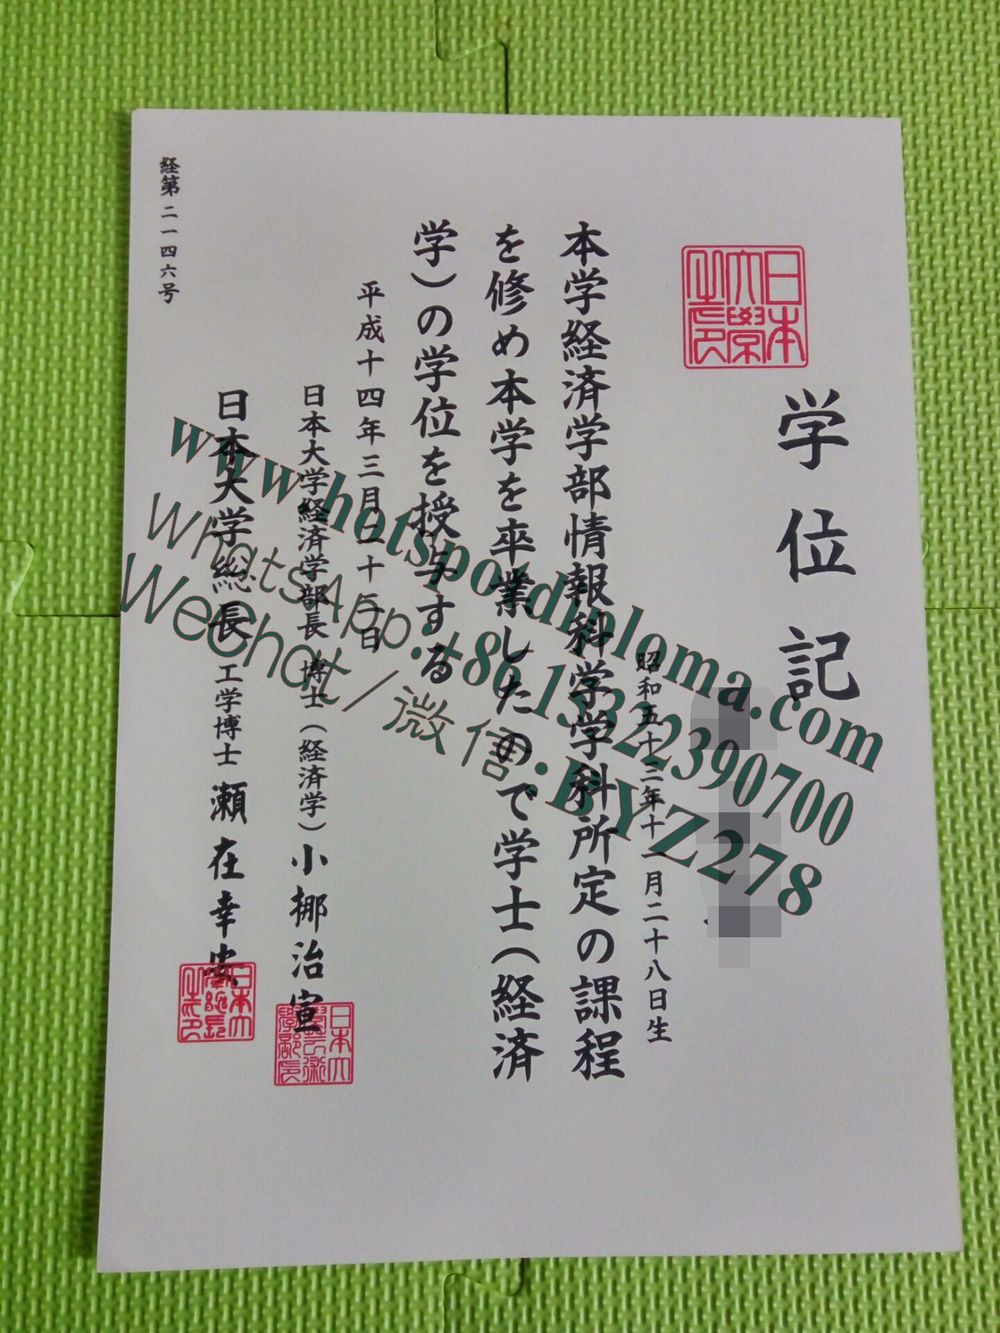 Make fake Nihon University Diploma